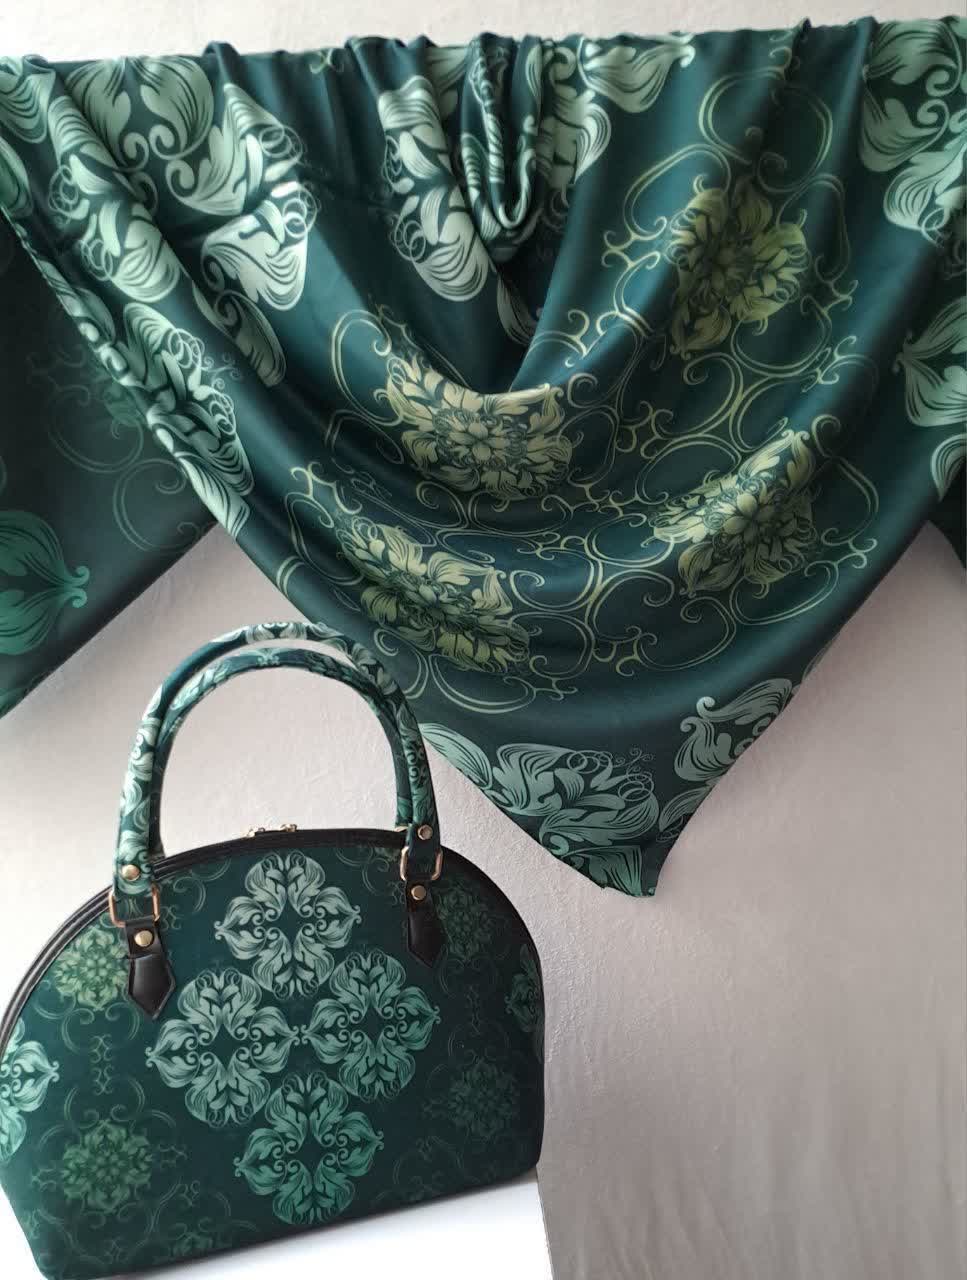 ست کیف و روسری زنانه با کیف نیمگرد رنگ سبز سنتی با ارسال رایگان کد na1472